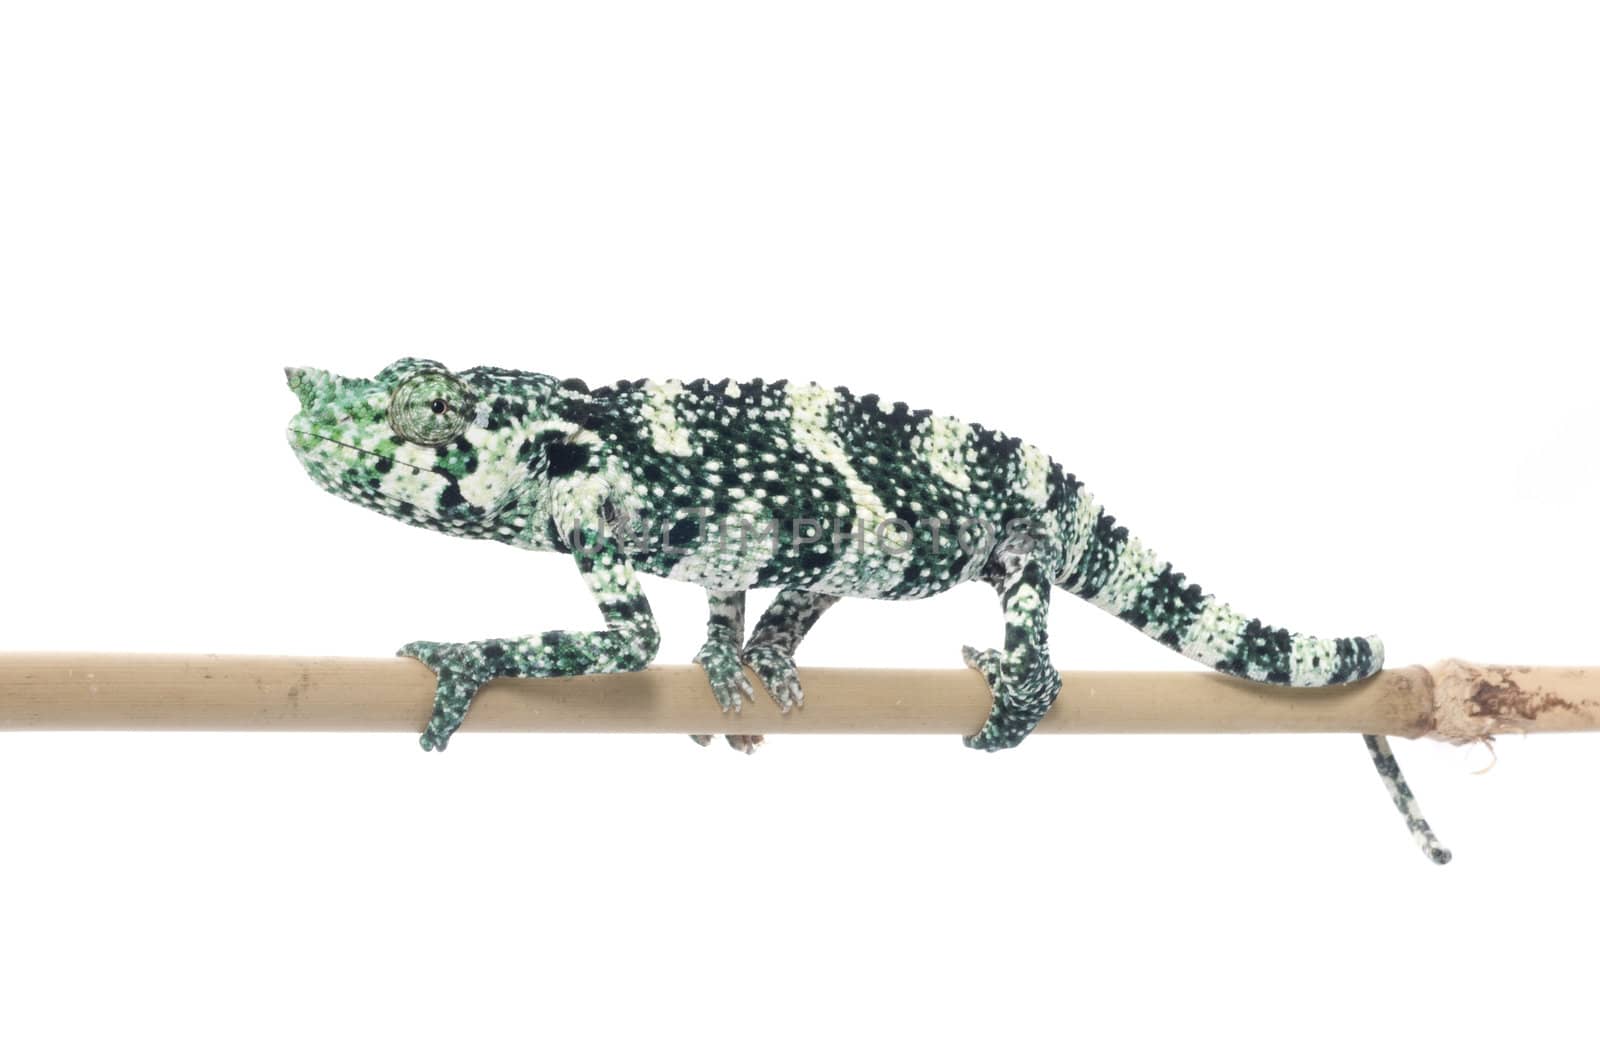 Meller Chameleon on a branch.